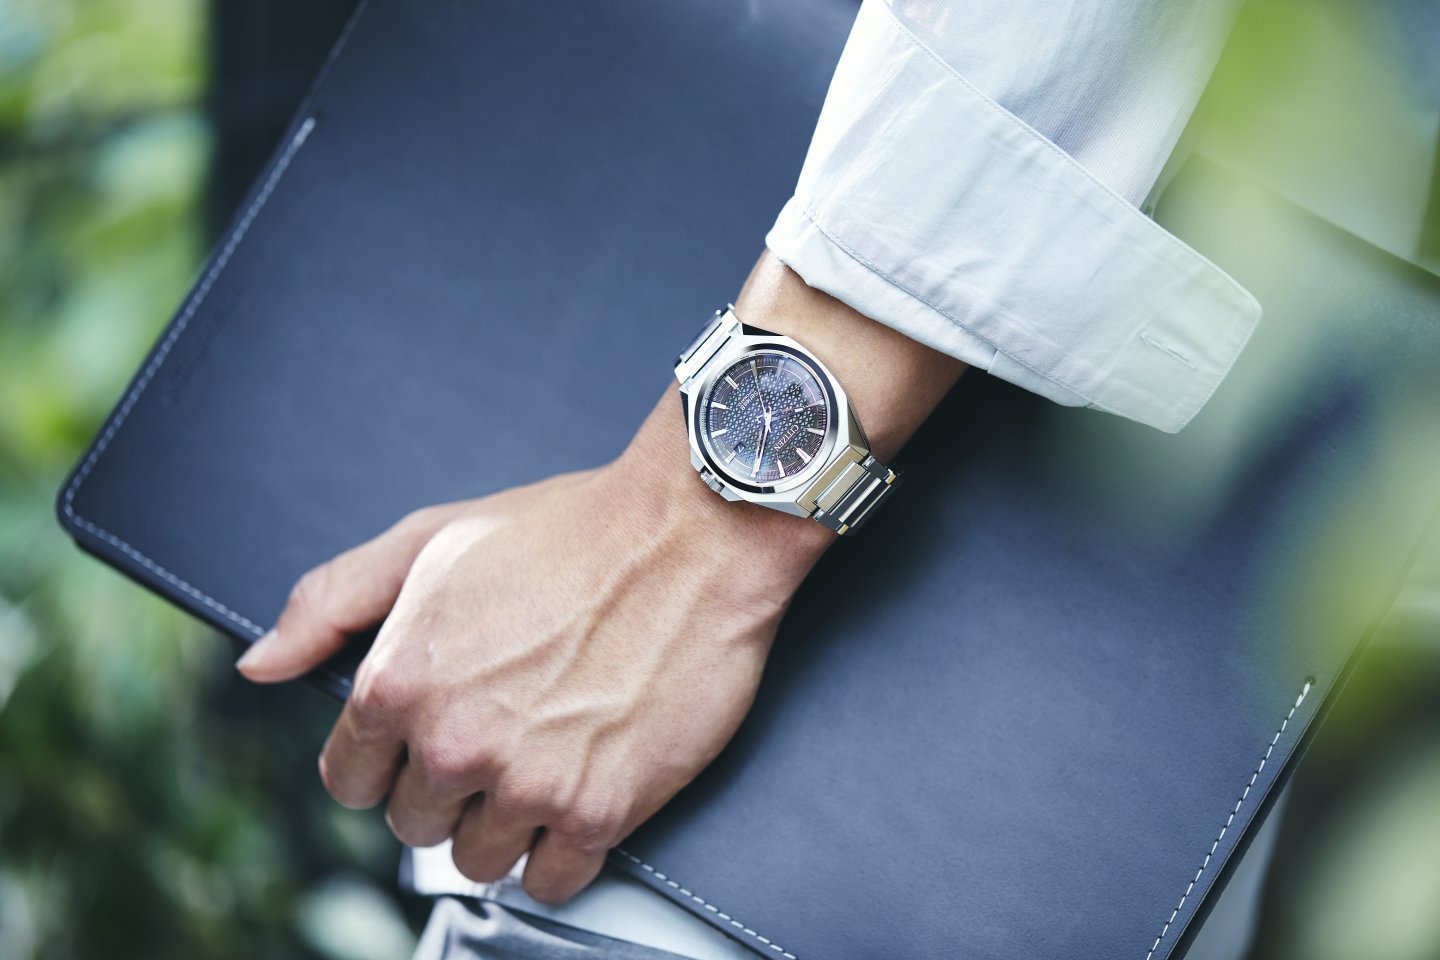 『シチズン シリーズエイト』より 3機種 8モデルが８月３⽇発売～モダン・スポーティデザインの機械式時計。実機画像＋インプレッション付